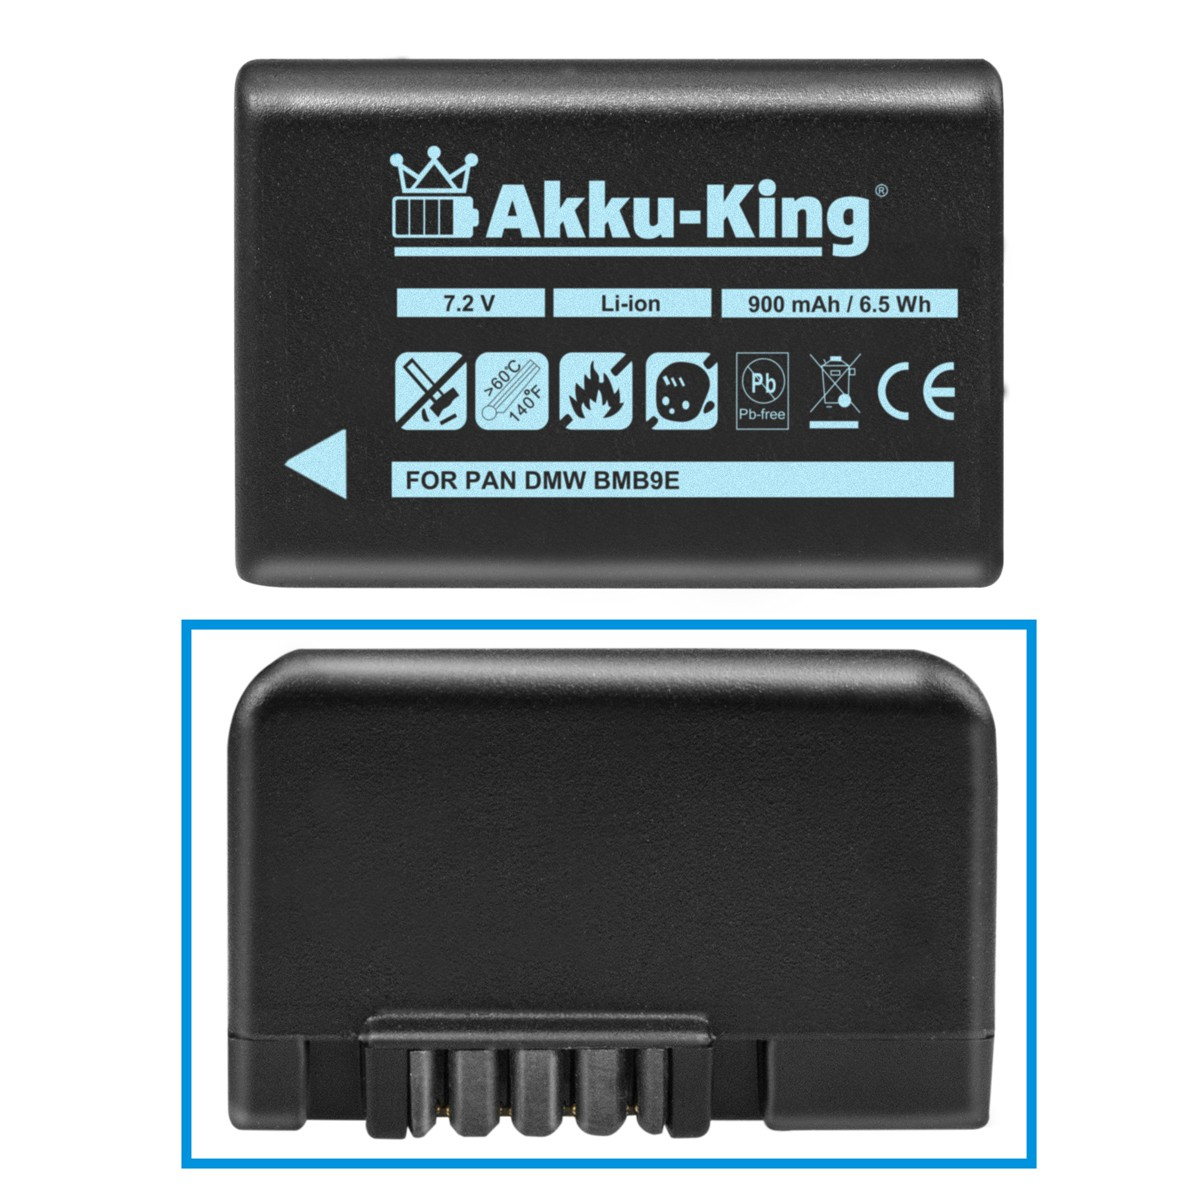 AKKU-KING Akku kompatibel Volt, 900mAh Kamera-Akku, Panasonic DMW-BMB9E 7.2 Li-Ion mit